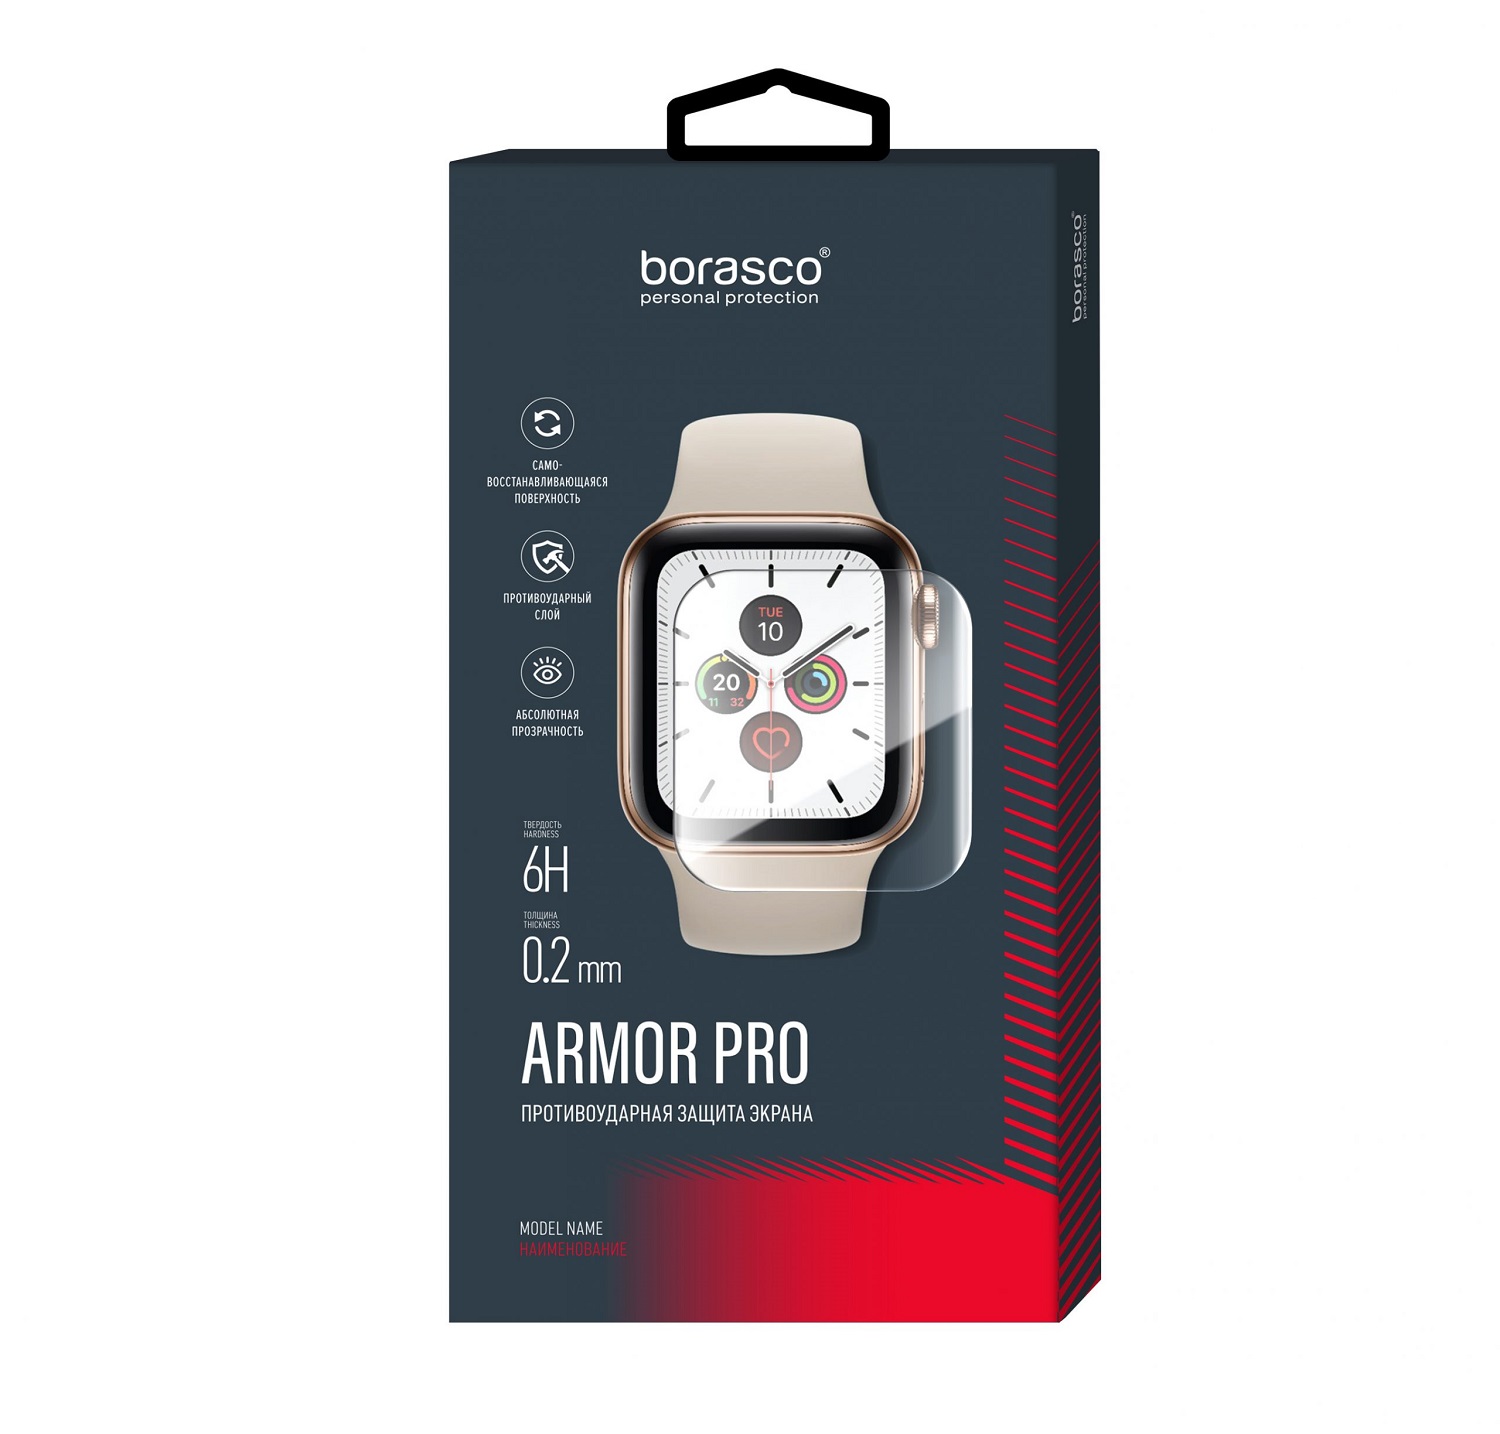 Защита экрана BoraSCO Armor Pro для Huawei Watch fit защита экрана borasco armor pro для honor 50